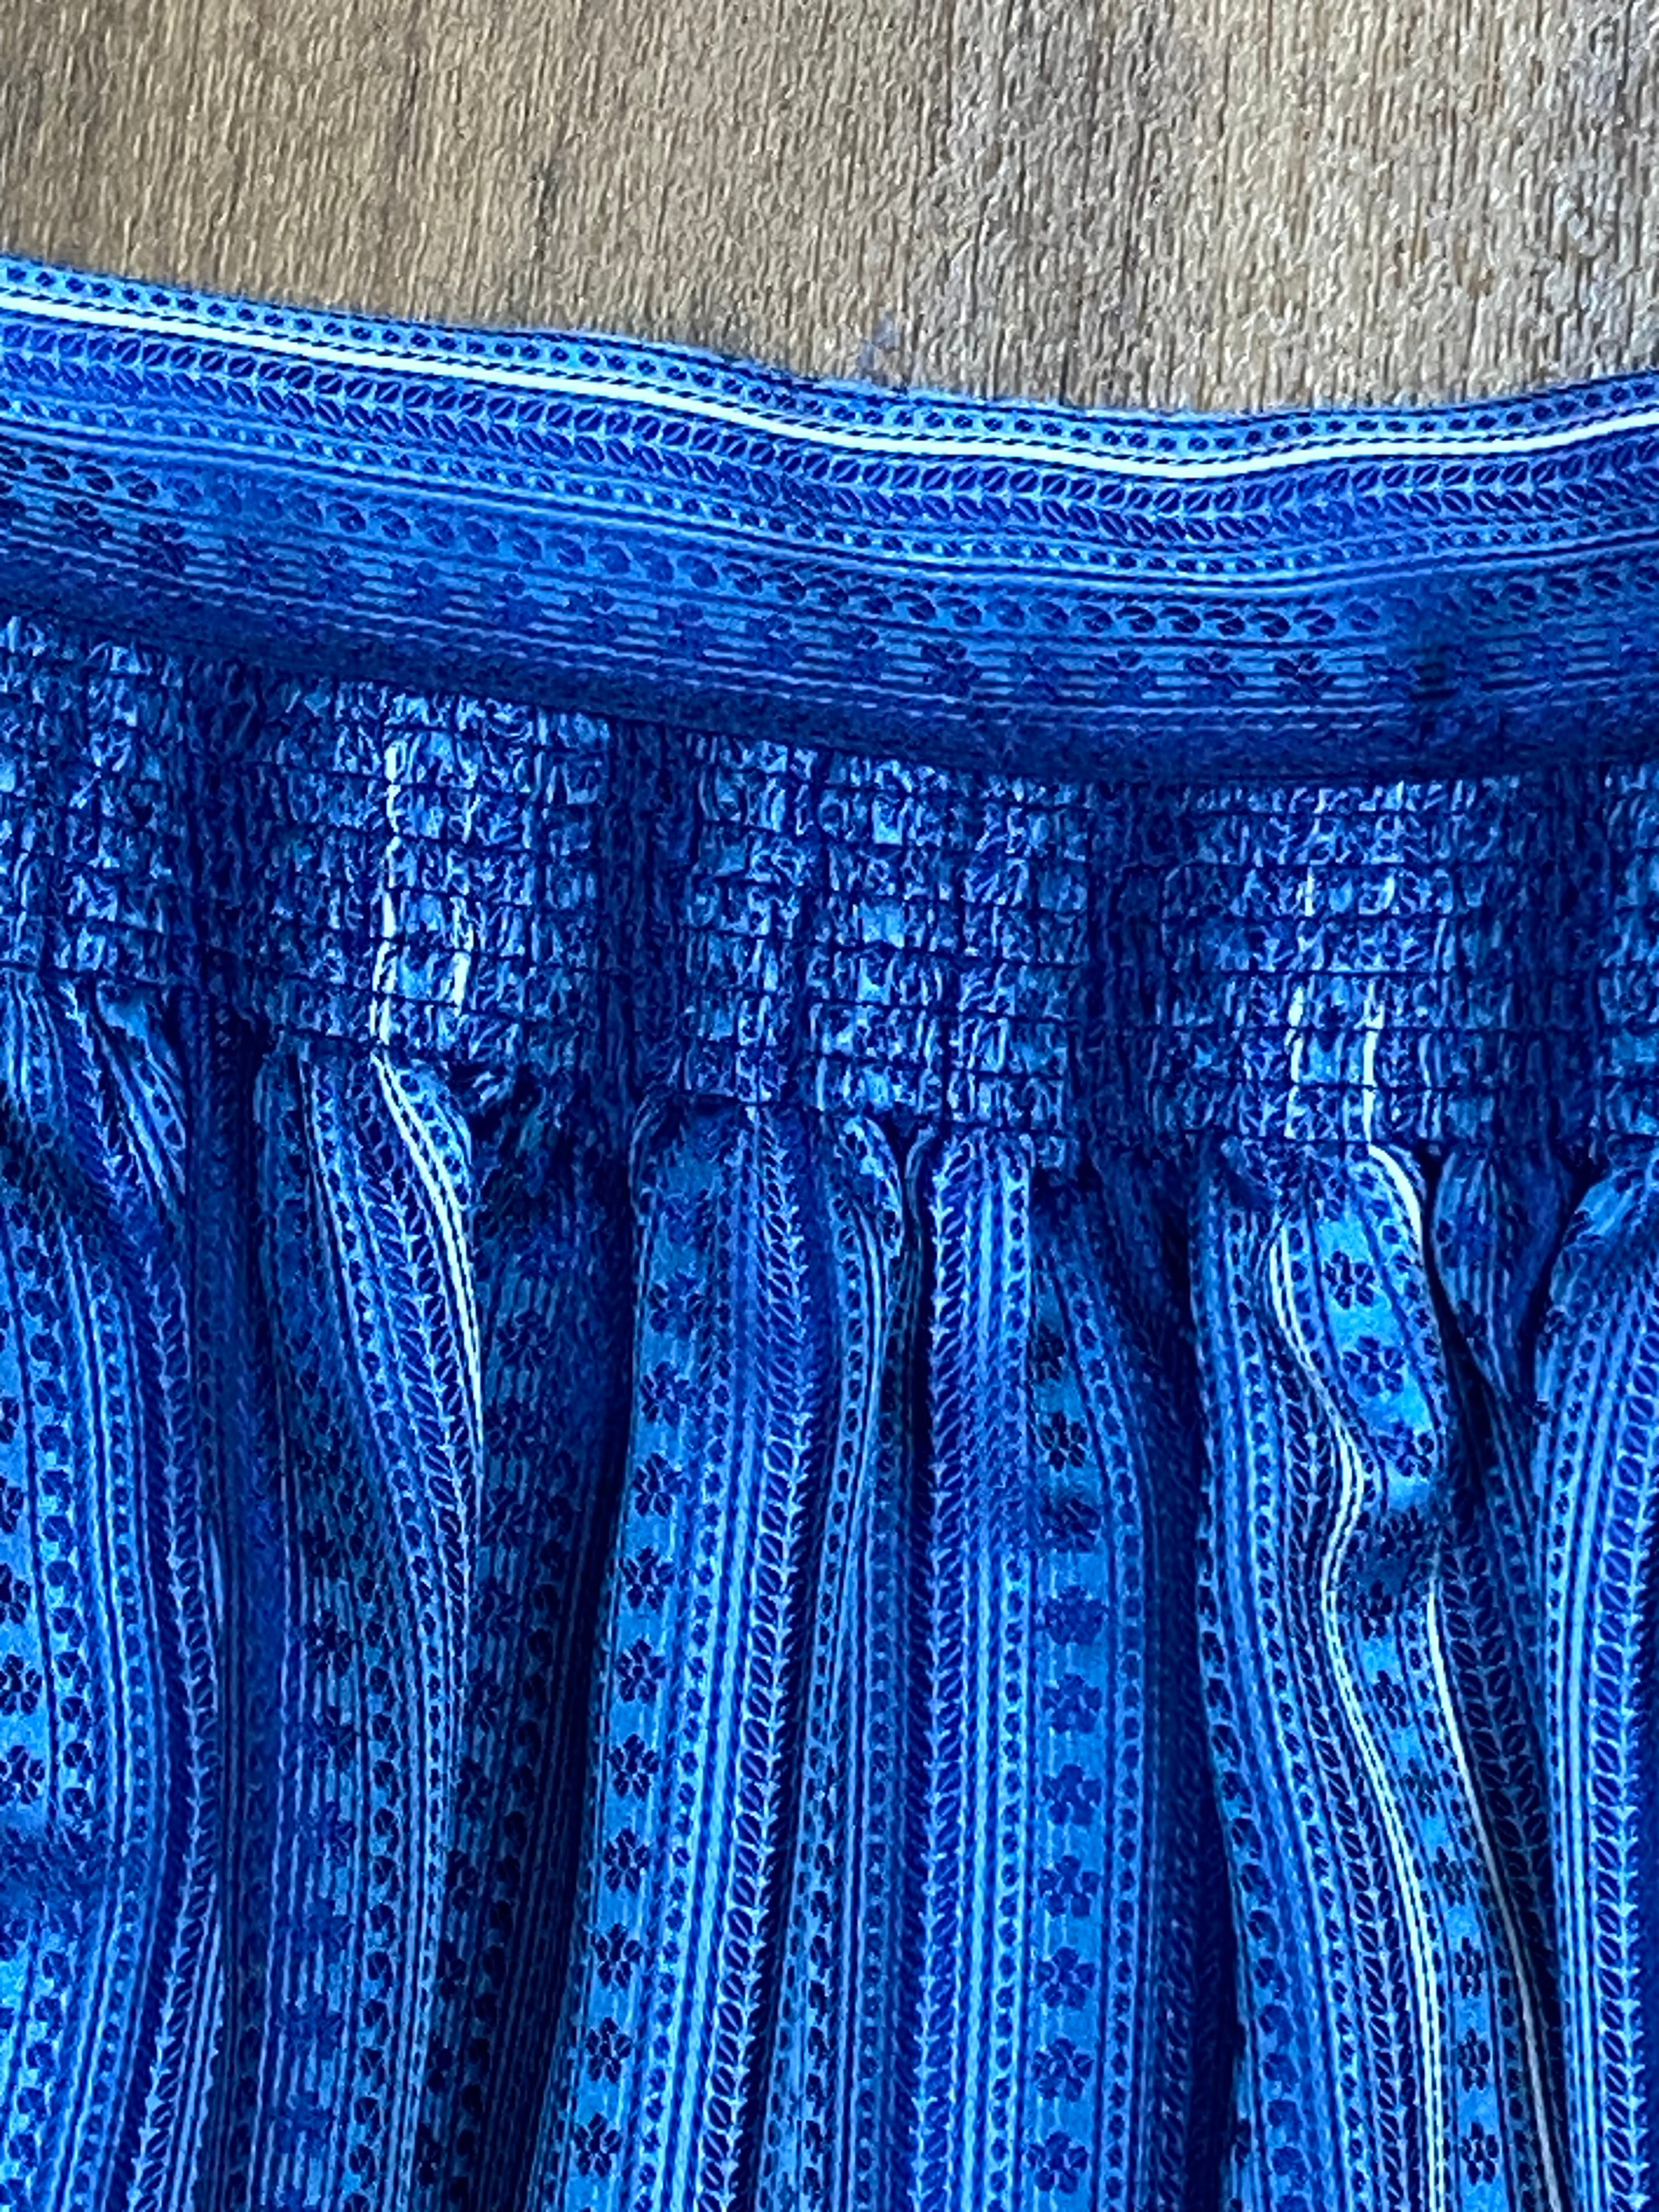 Lange Vintage Dirndlschürze für Trachten-Kleid in blau gemustert 85 cm